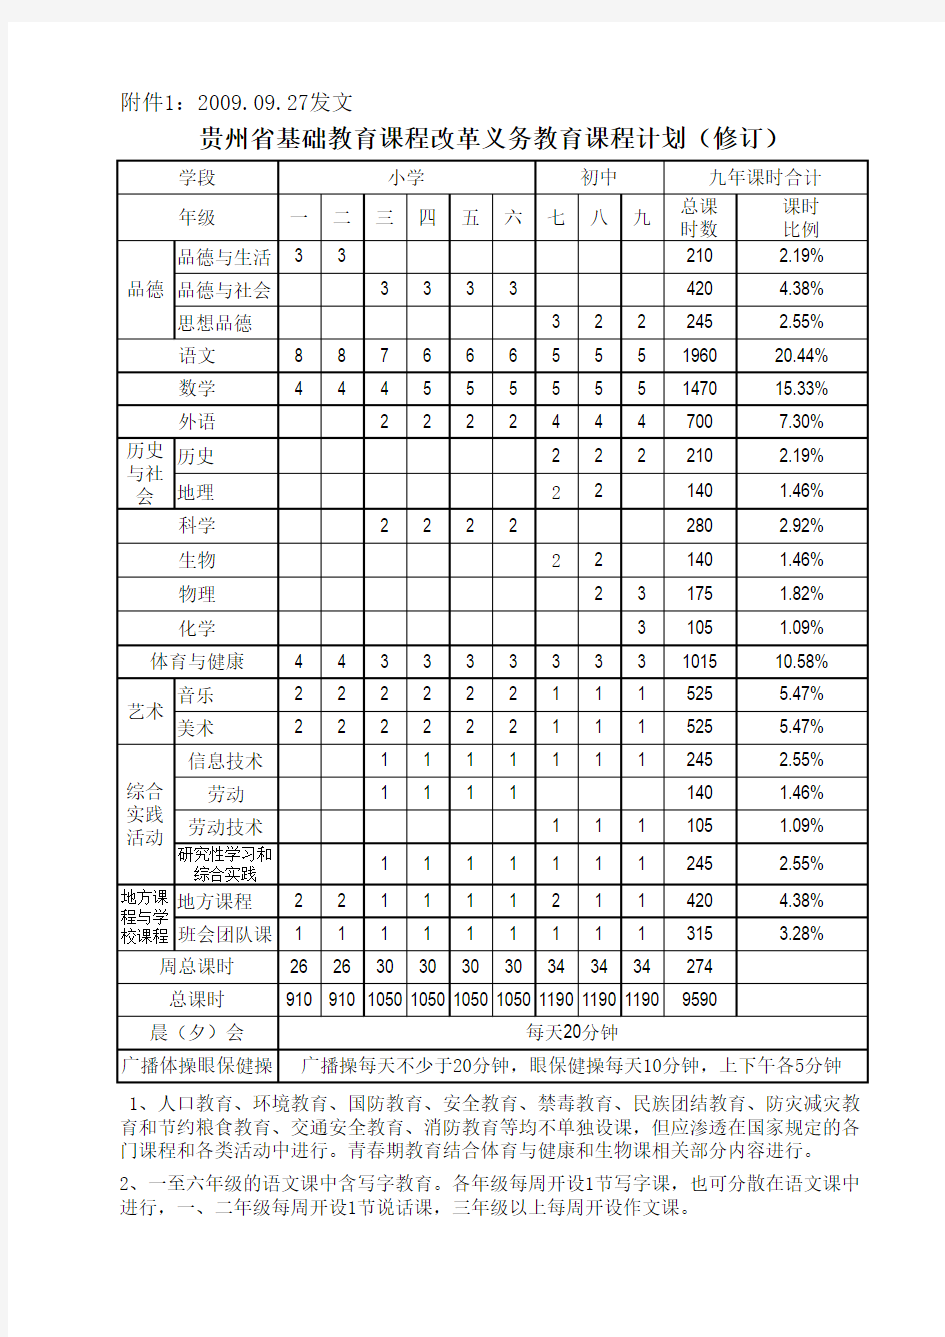 贵州省基础教育课程改革义务教育课程计划(修订) (86161)